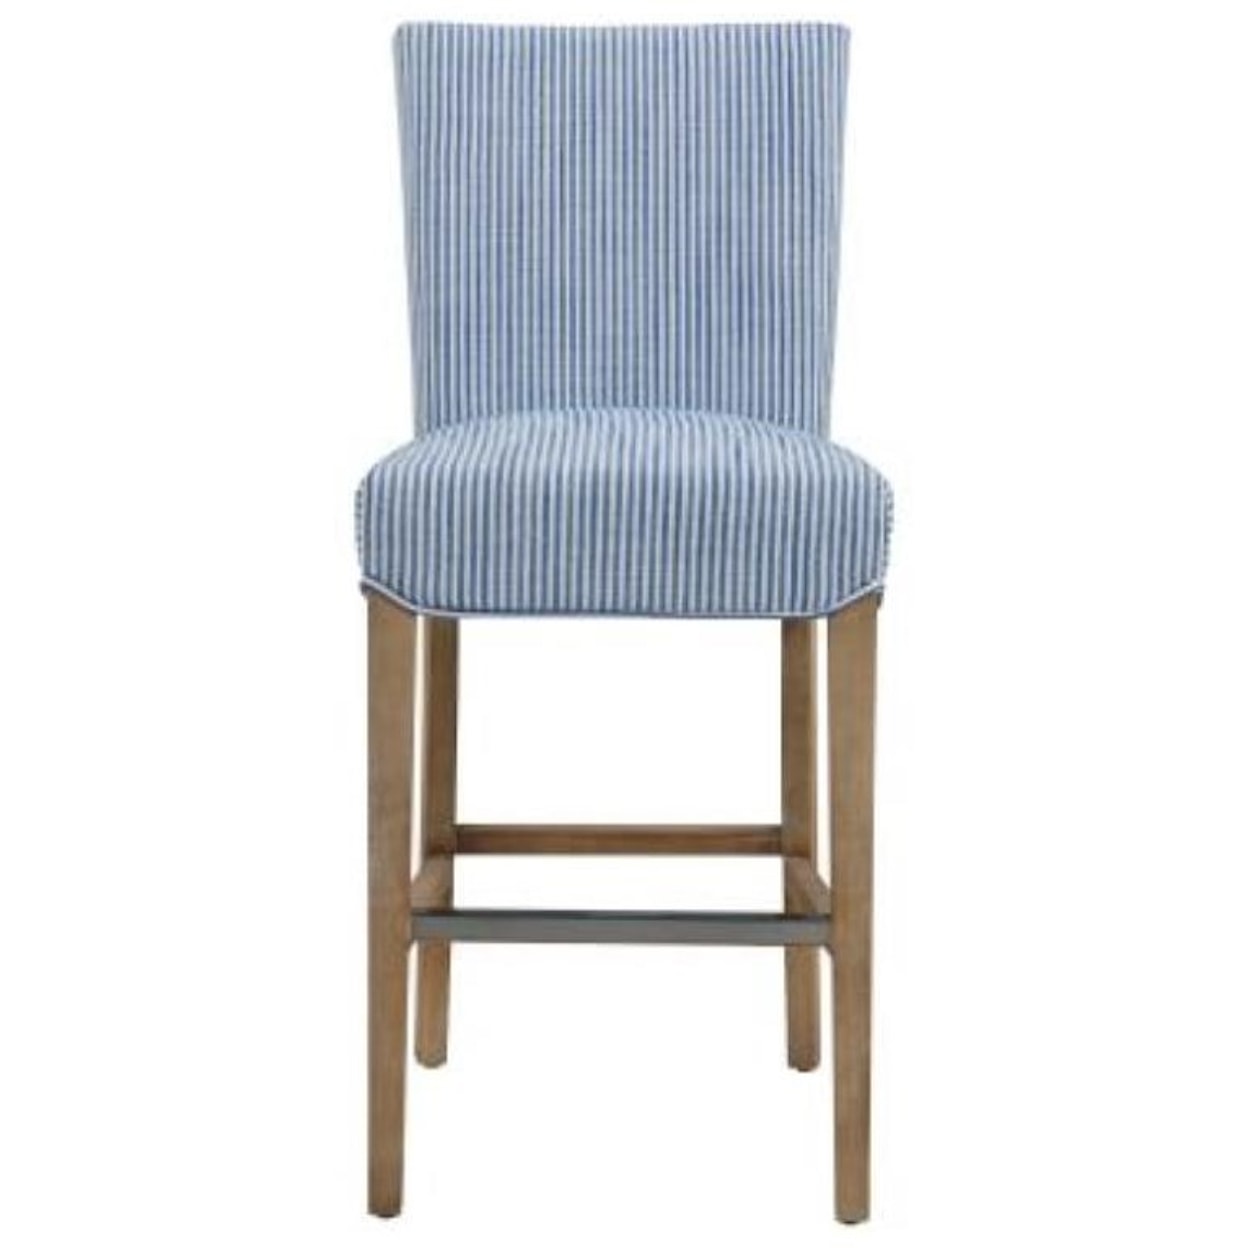 Happy Chair Milton Milton Counter Stool, Blue Stripes